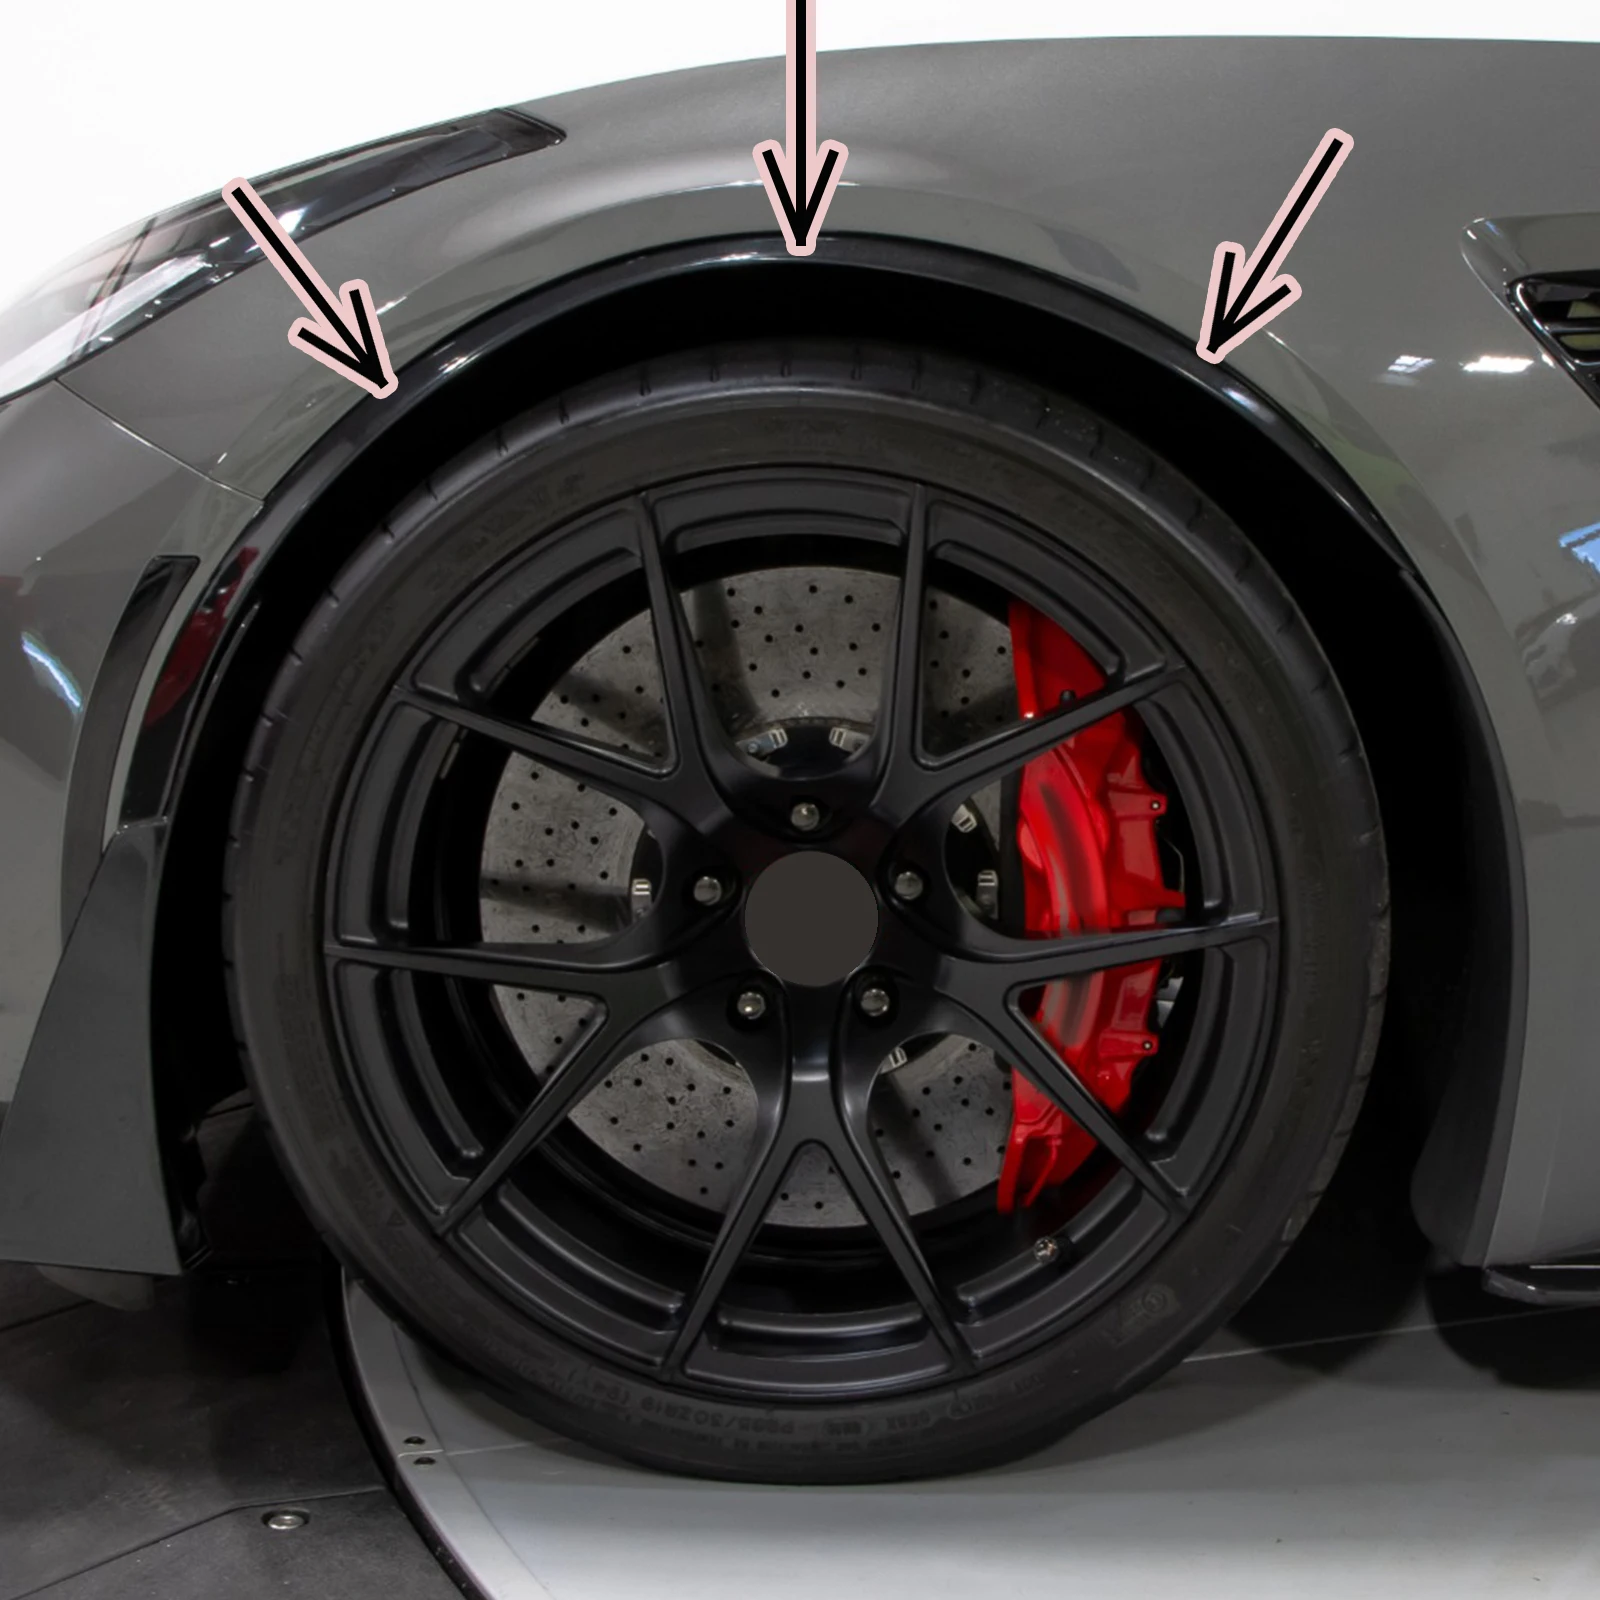 Garniture de roue avant de voiture pour Corvette C7, fibre de carbone, aspect noir brillant, arcs d'aile, fusées éclairantes de moulage, style GM, 2014-2019, 2 pièces